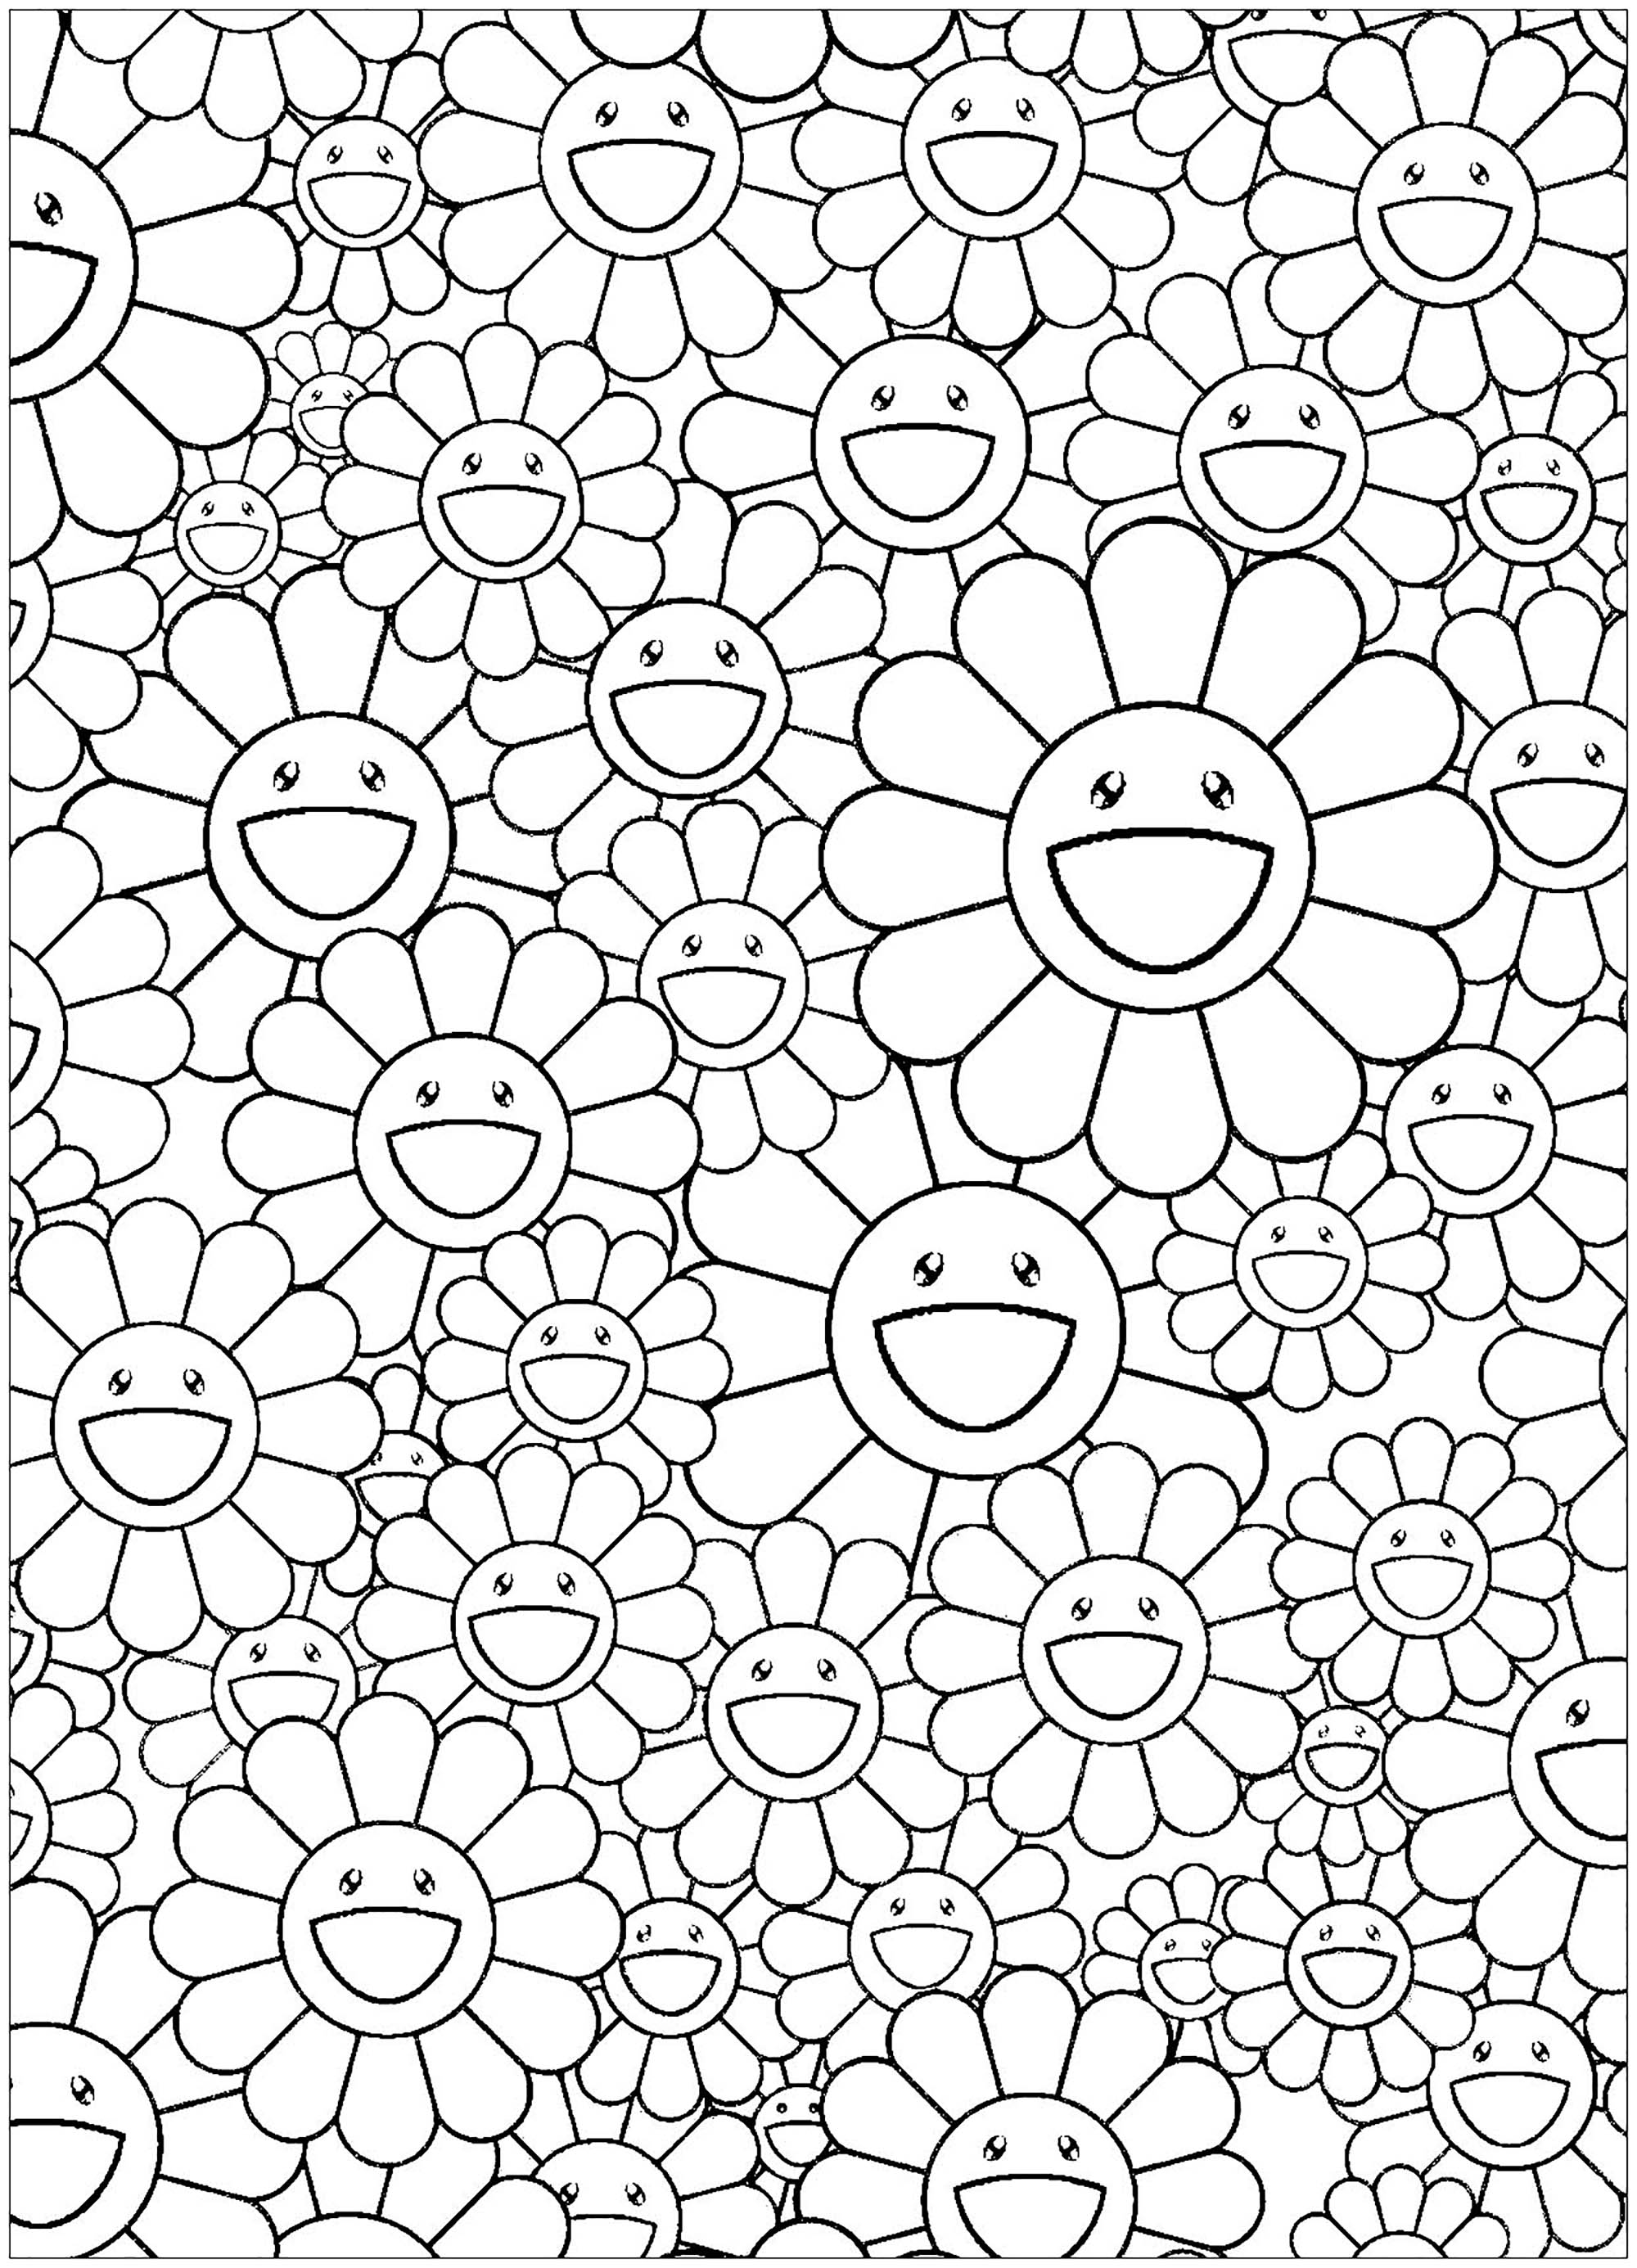 Página para colorear inspirada en una obra del artista japonés Takashi Murakami (estilo : Superflat) - versión sencilla. ¡Flores felices !